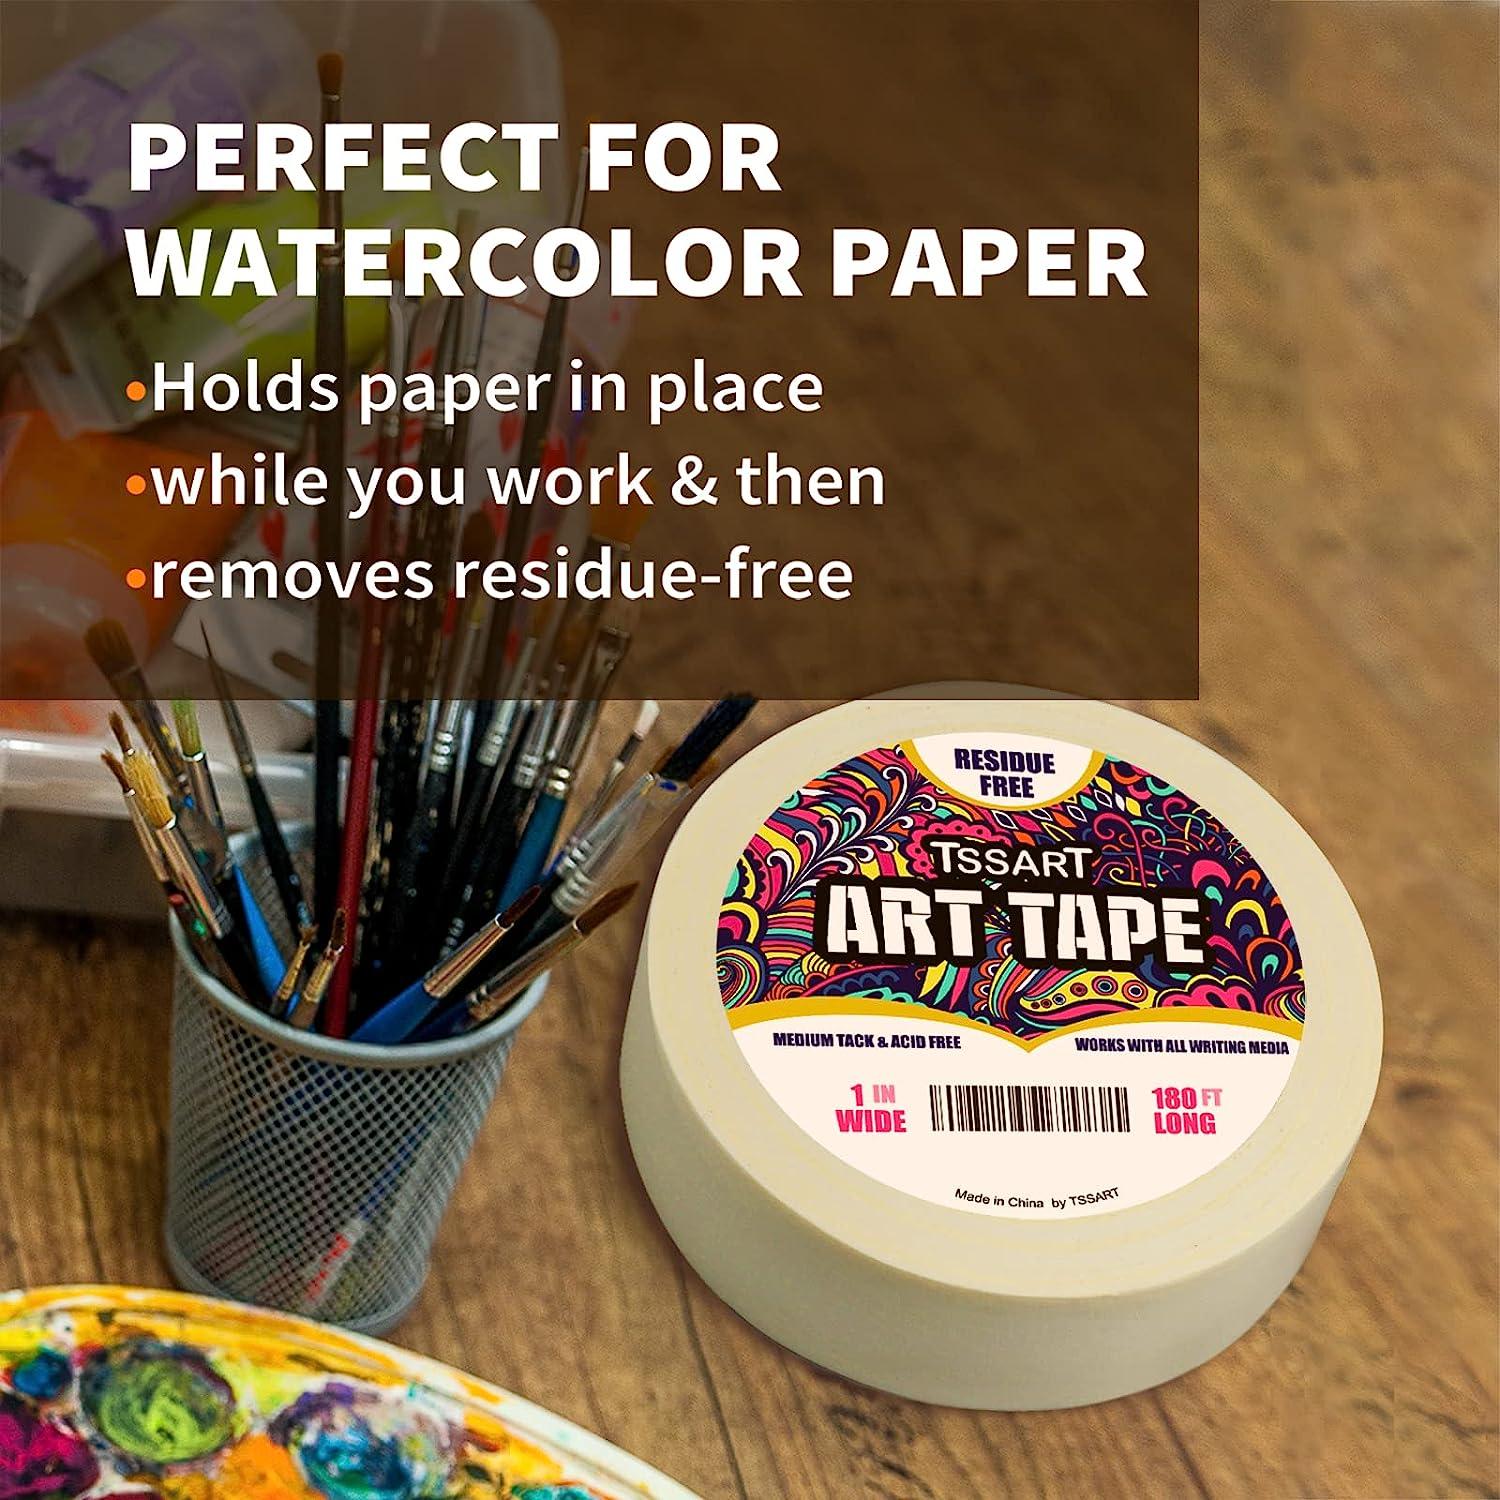 TSSART White Art Tape Medium Tack - Masking Artists Tape for